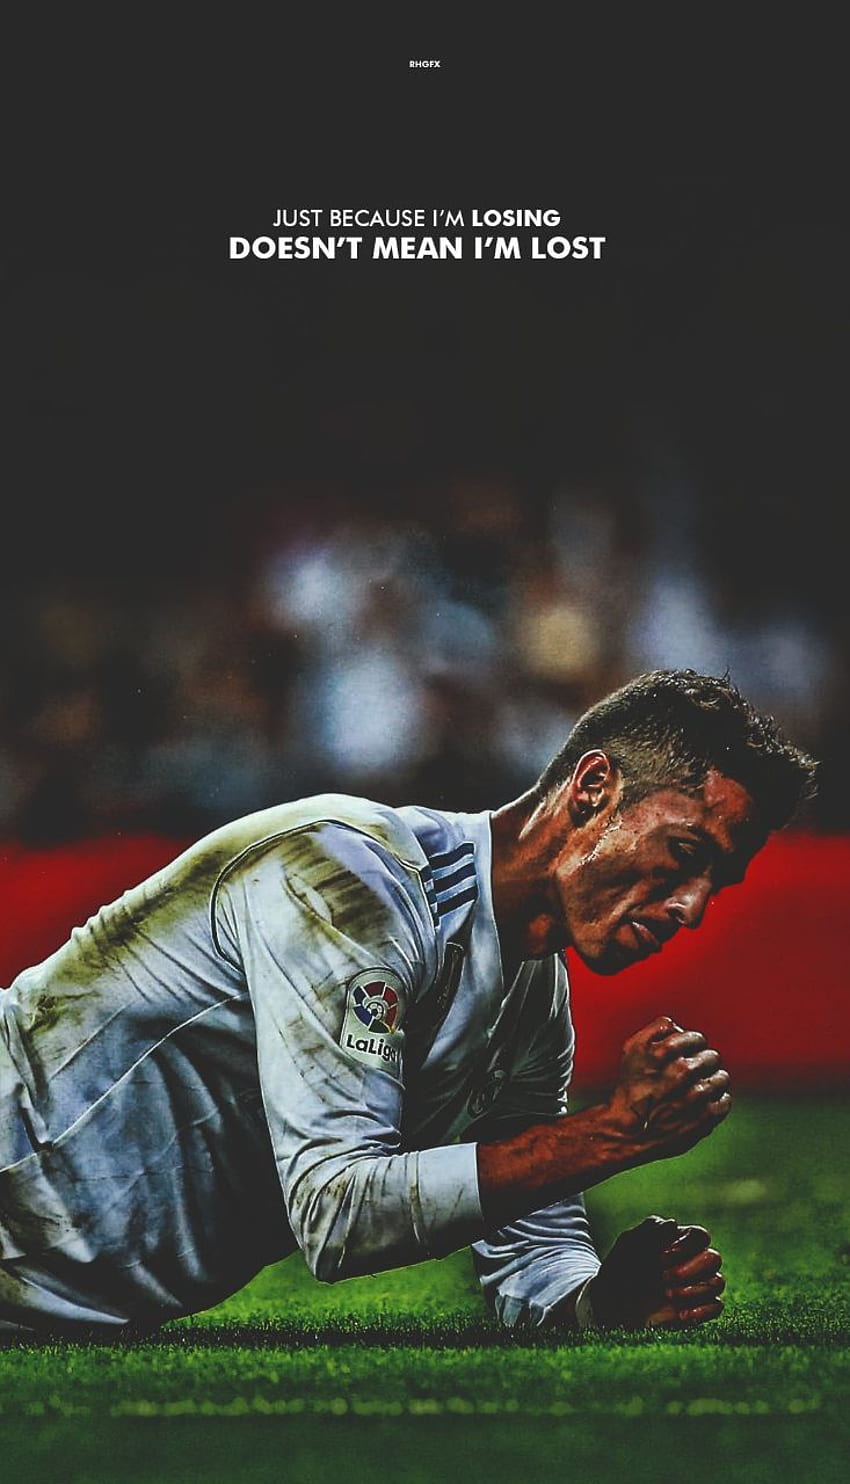 ronaldo, HD wallpapers: Bạn yêu thích Ronaldo, nhưng còn thiếu đẹp mắt hơn để trang trí màn hình điện thoại hoặc máy tính của mình? Hãy tới đây và xem những bức ảnh HD của Ronaldo. Các bức ảnh này đem lại cái nhìn đẹp mắt, sống động và xứng đáng để bạn sử dụng làm hình nền.